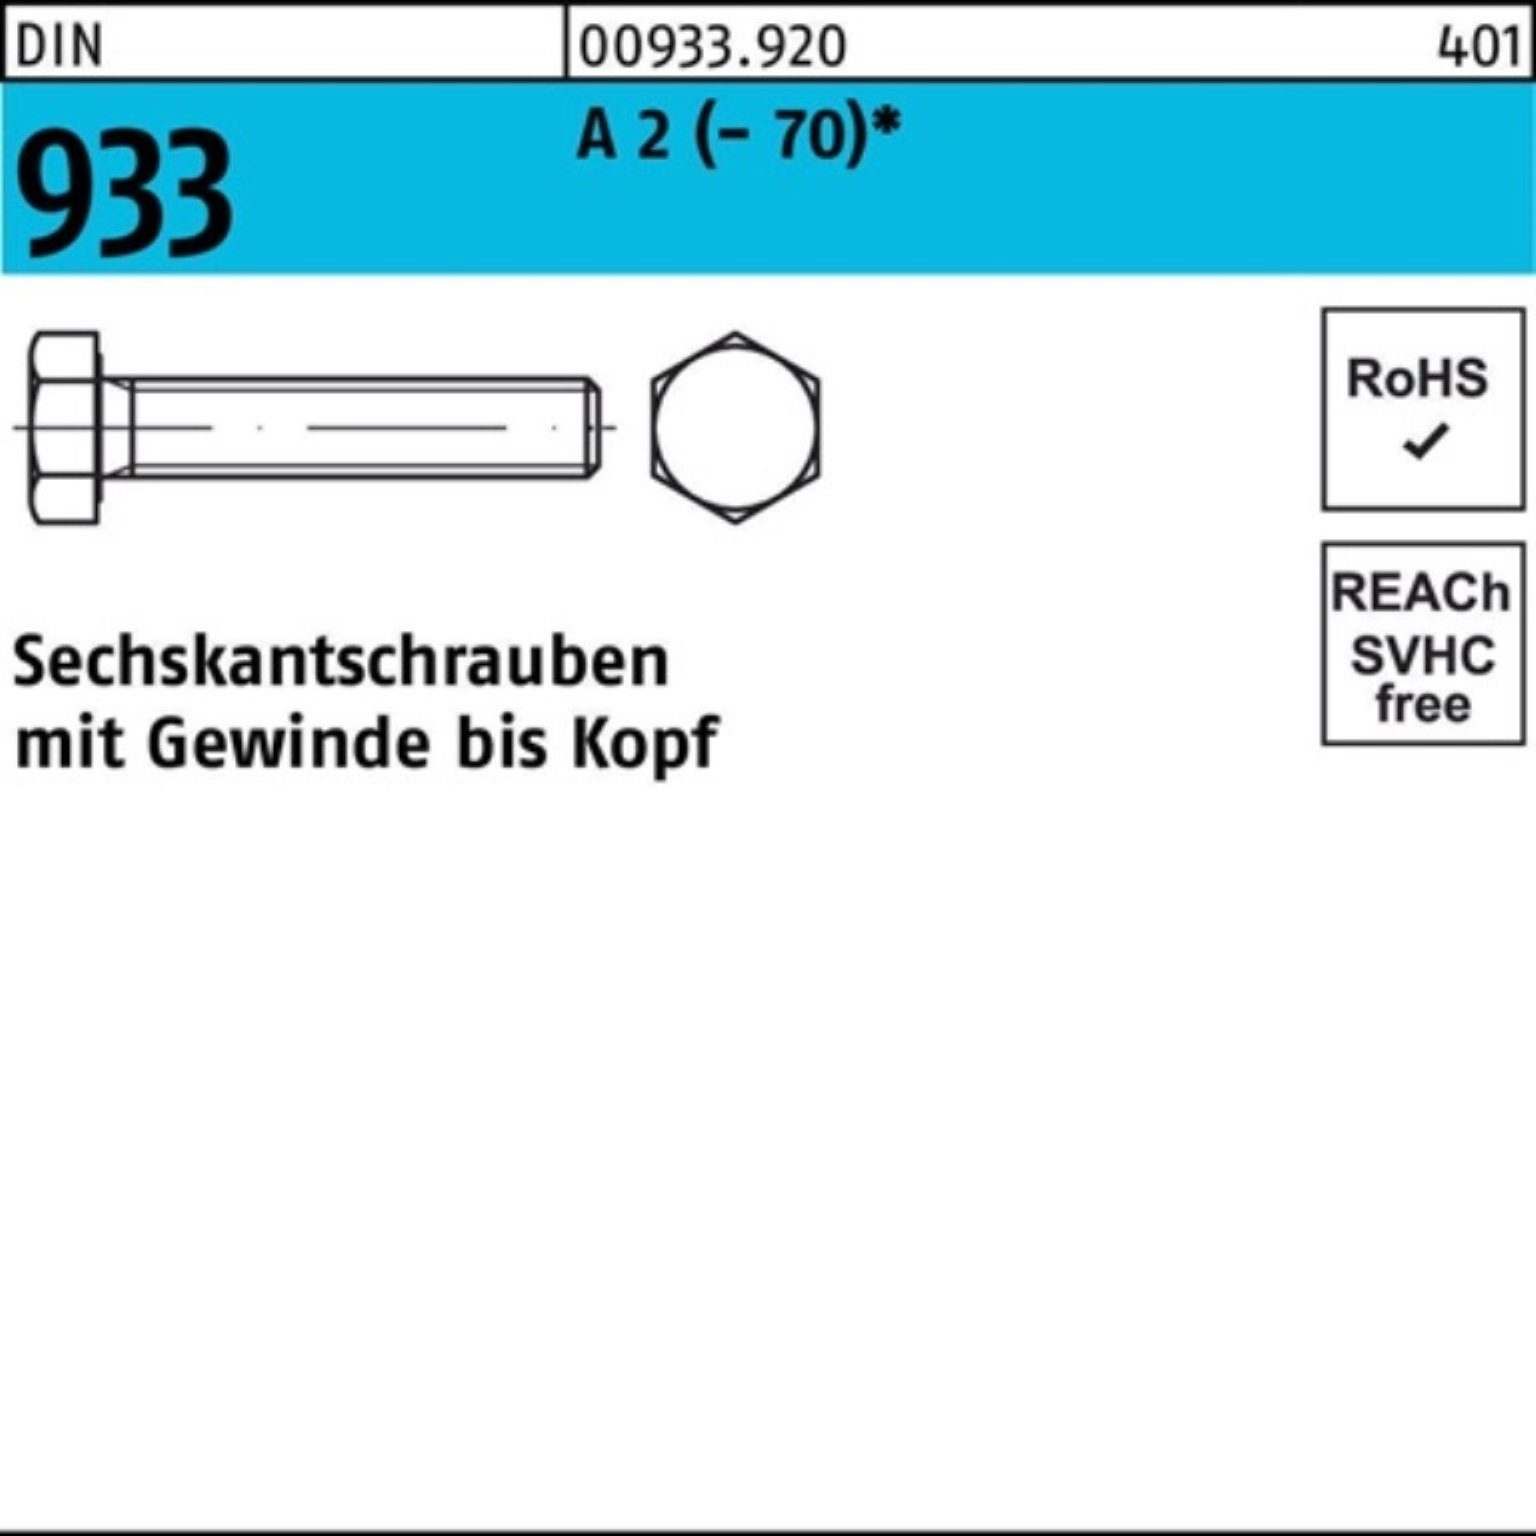 Reyher Sechskantschraube 500er Pack Sechskantschraube DIN 933 VG M6x 10 A 2 (70) 500 Stück D